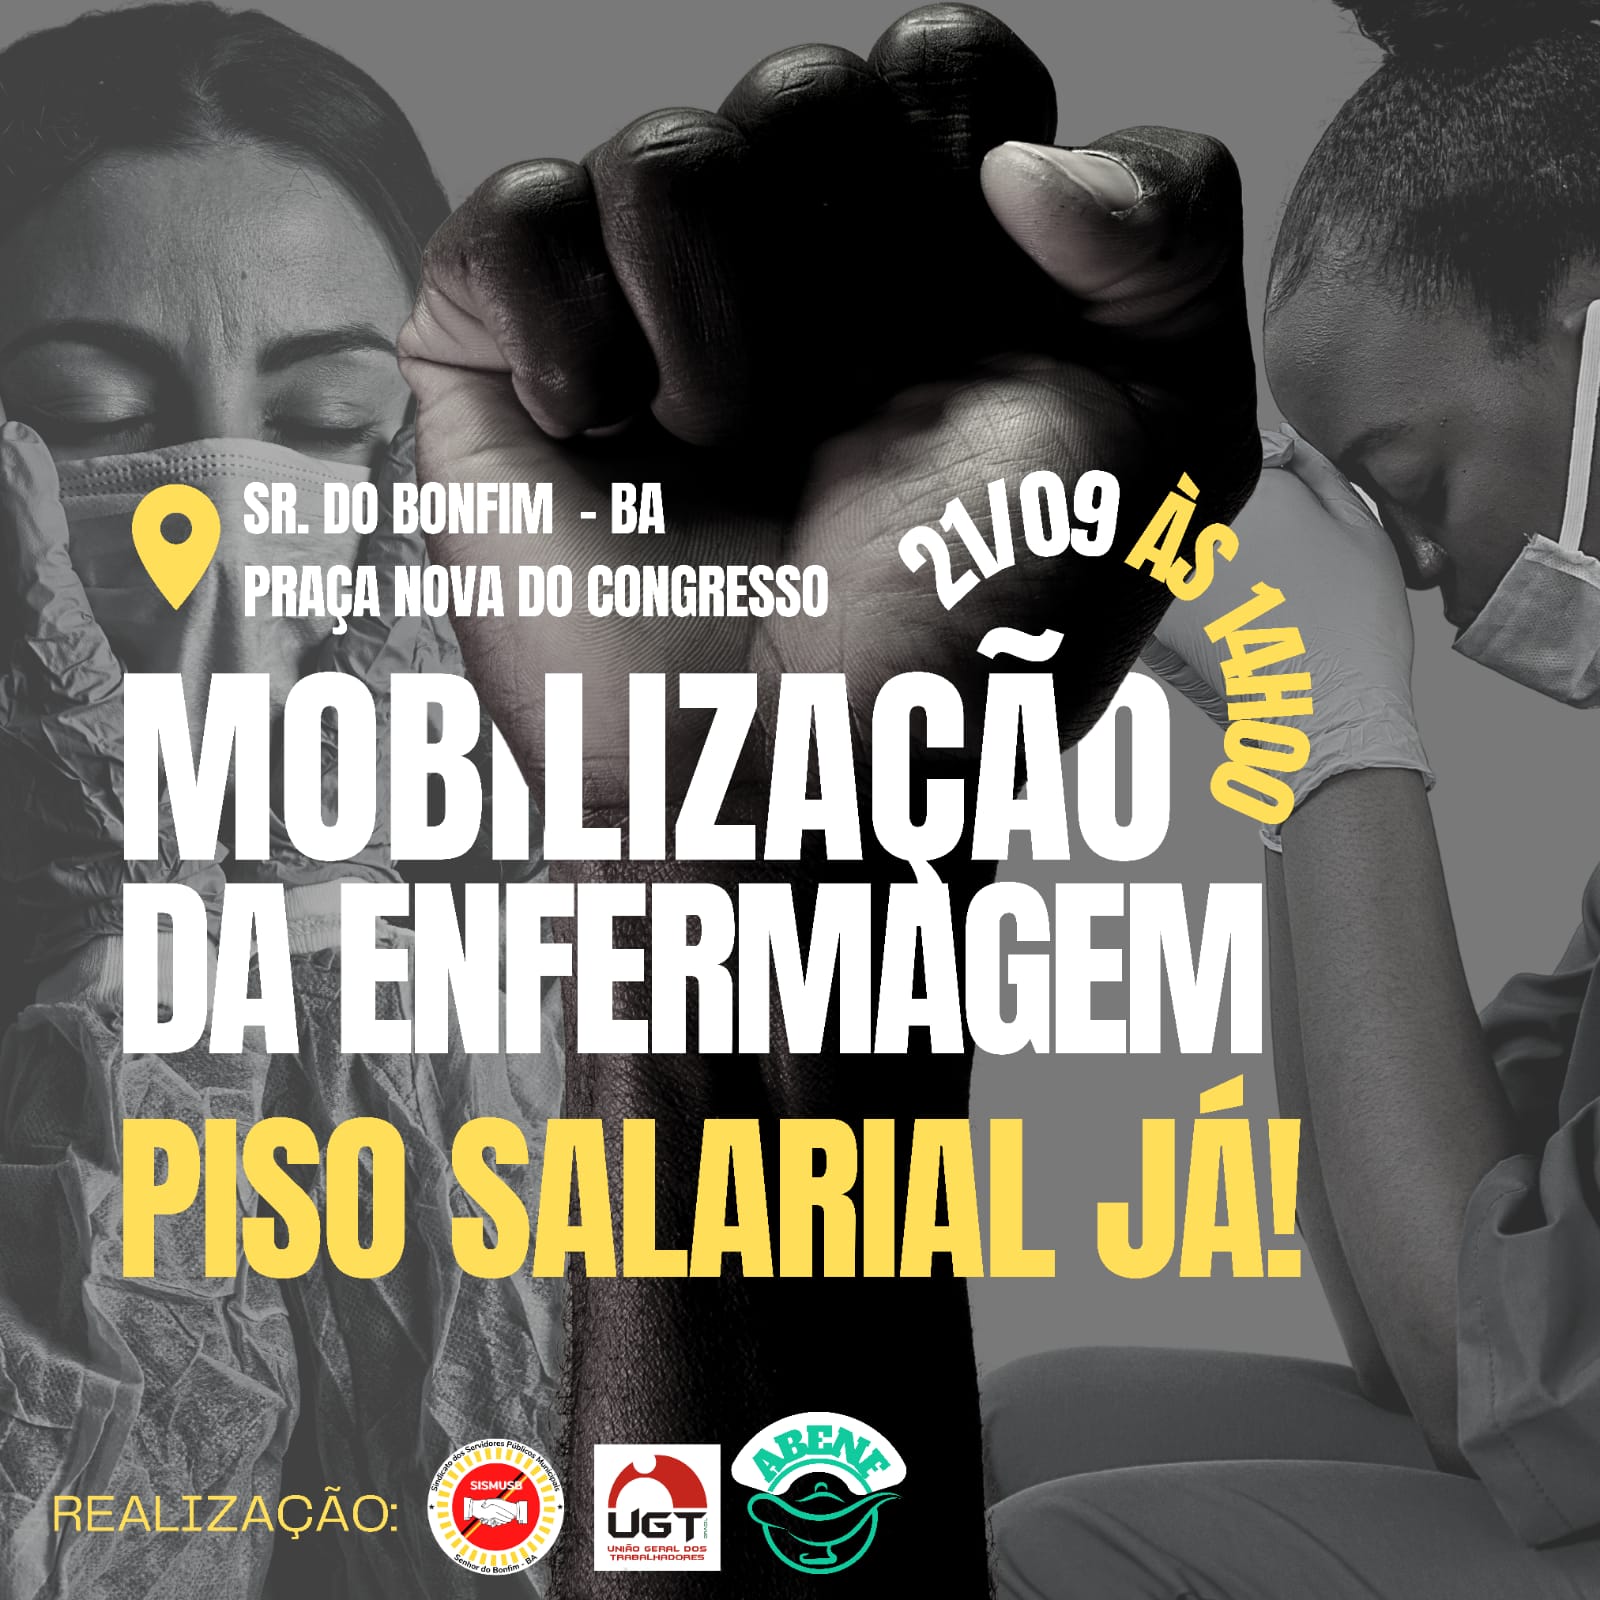 Profissionais da Enfermagem de Senhor do Bonfim farão manifestação na próxima quarta-feira (21), em prol do Piso Salarial.